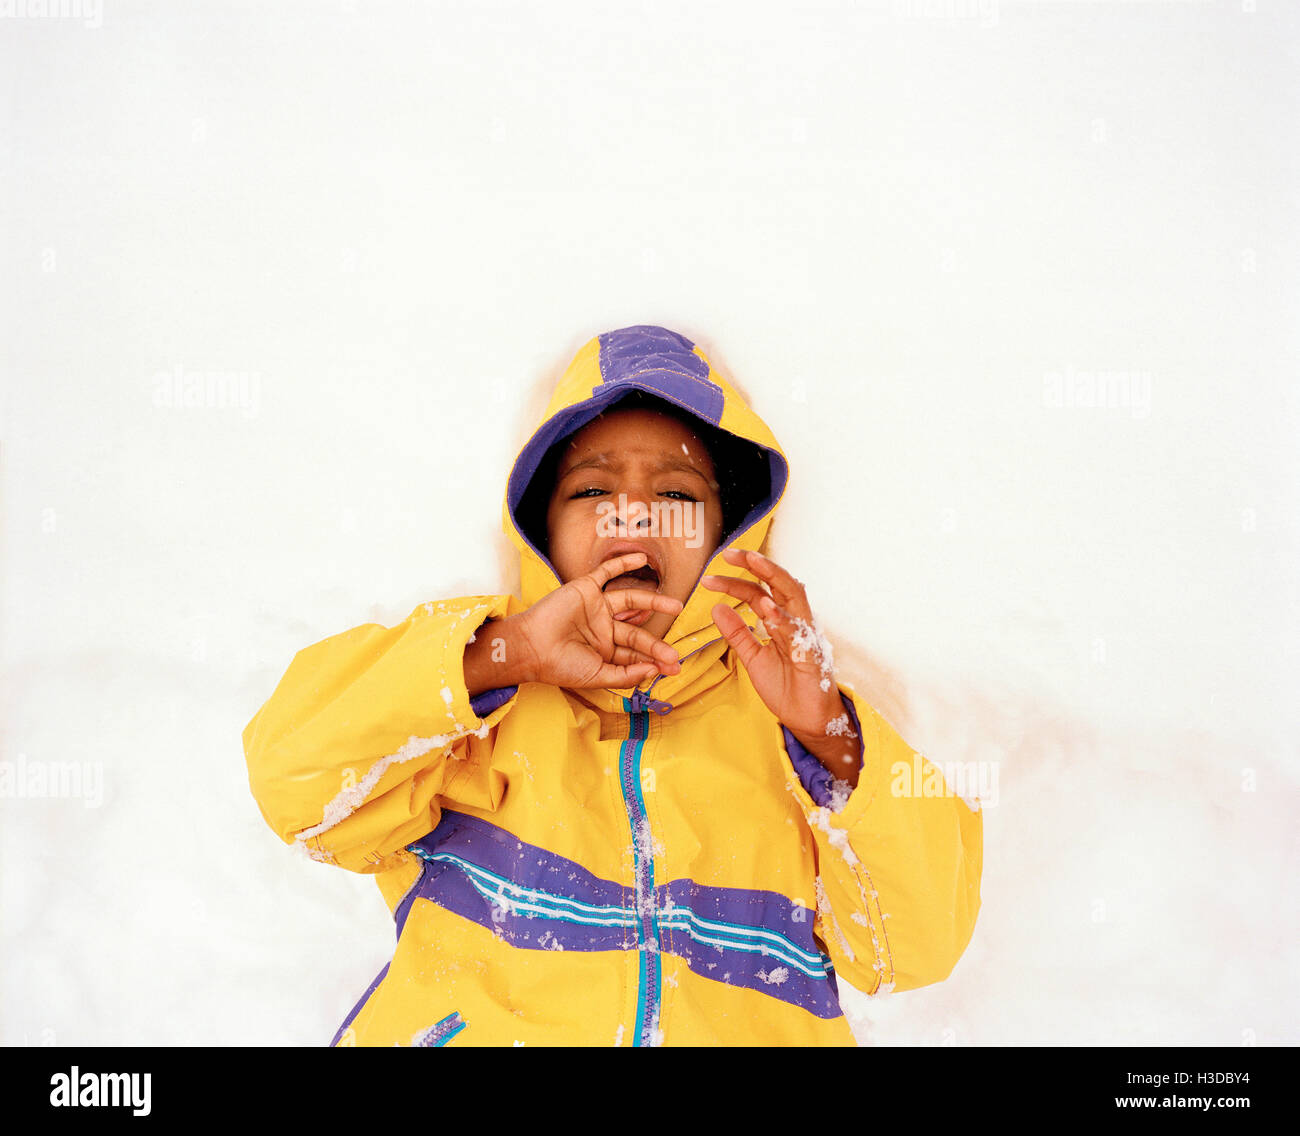 Ragazzo che indossa un cappotto giallo giacente nella neve. Foto Stock